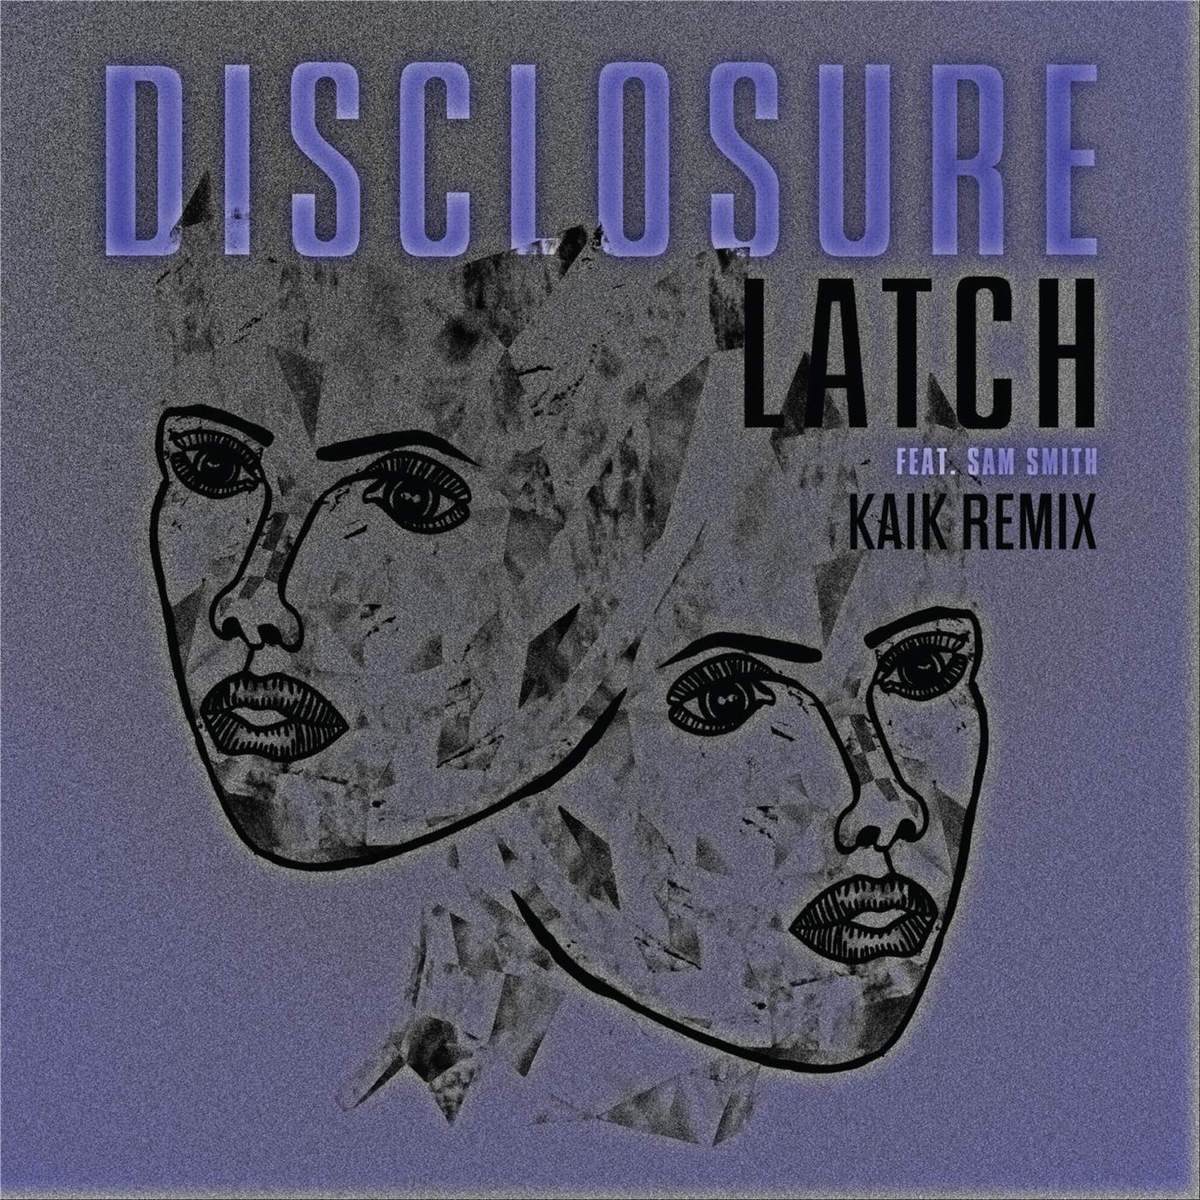 Latch (Kaik Remix) 